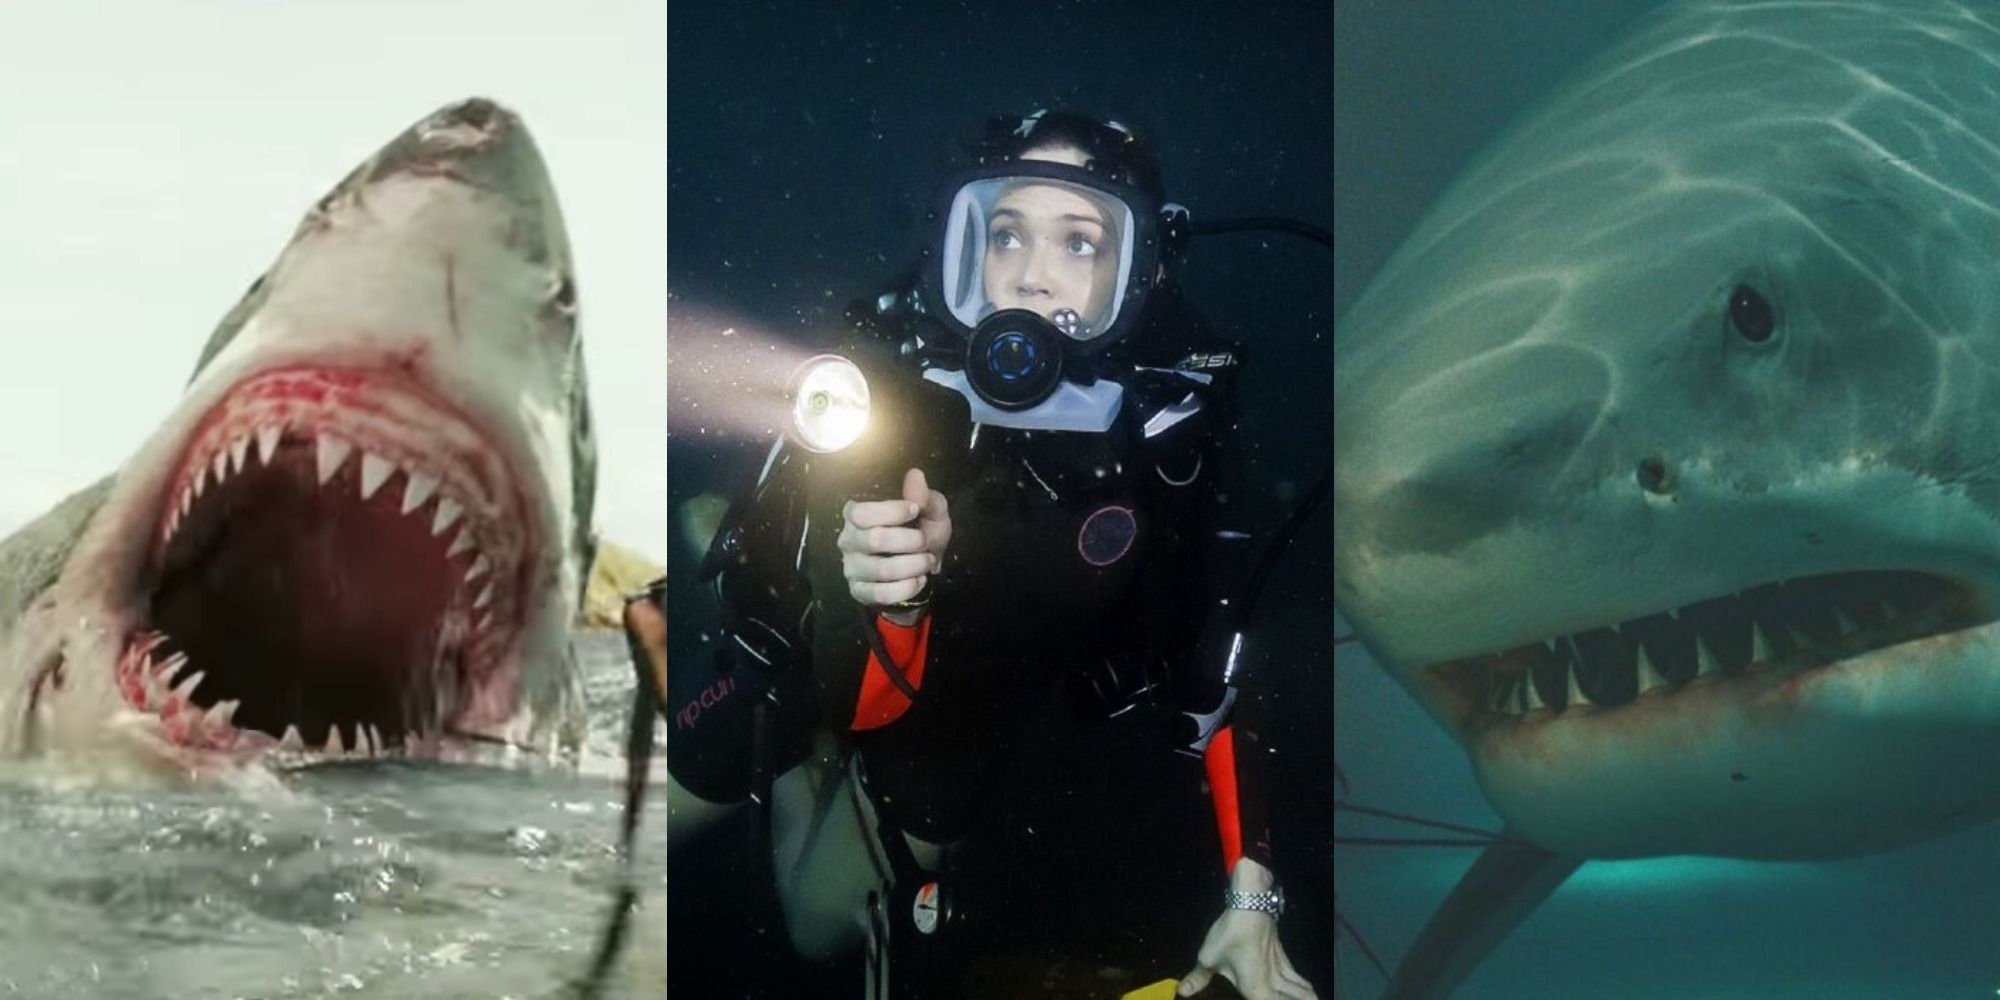 15 Best Shark Attack Movies, According To IMDb